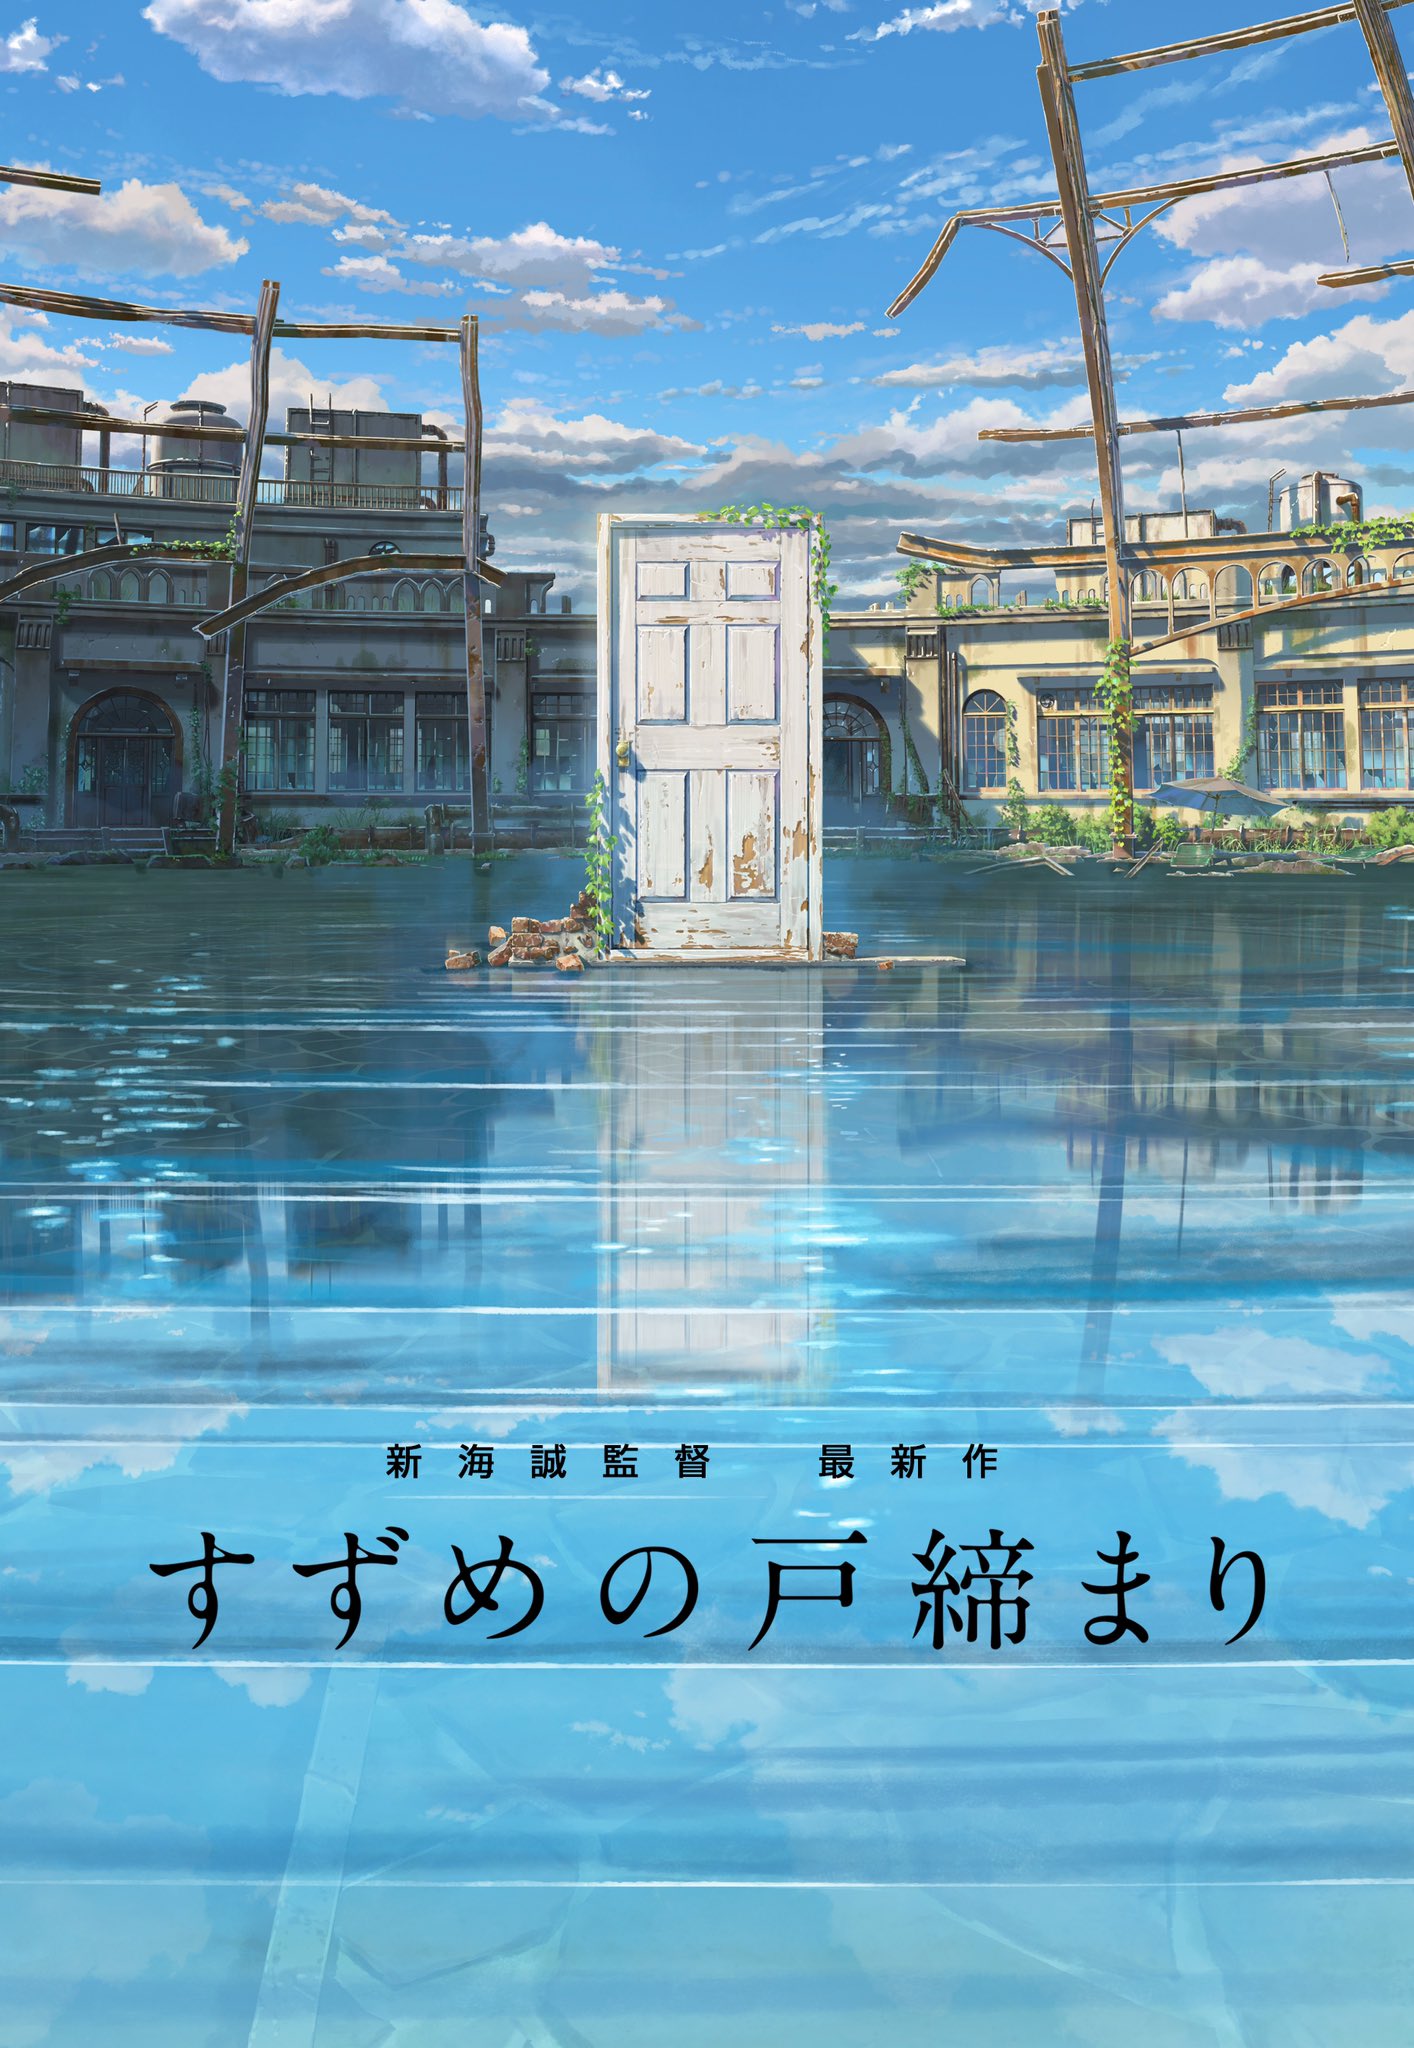 Crunchyroll: Suzume, animação de Makoto Shinkai, estreia com